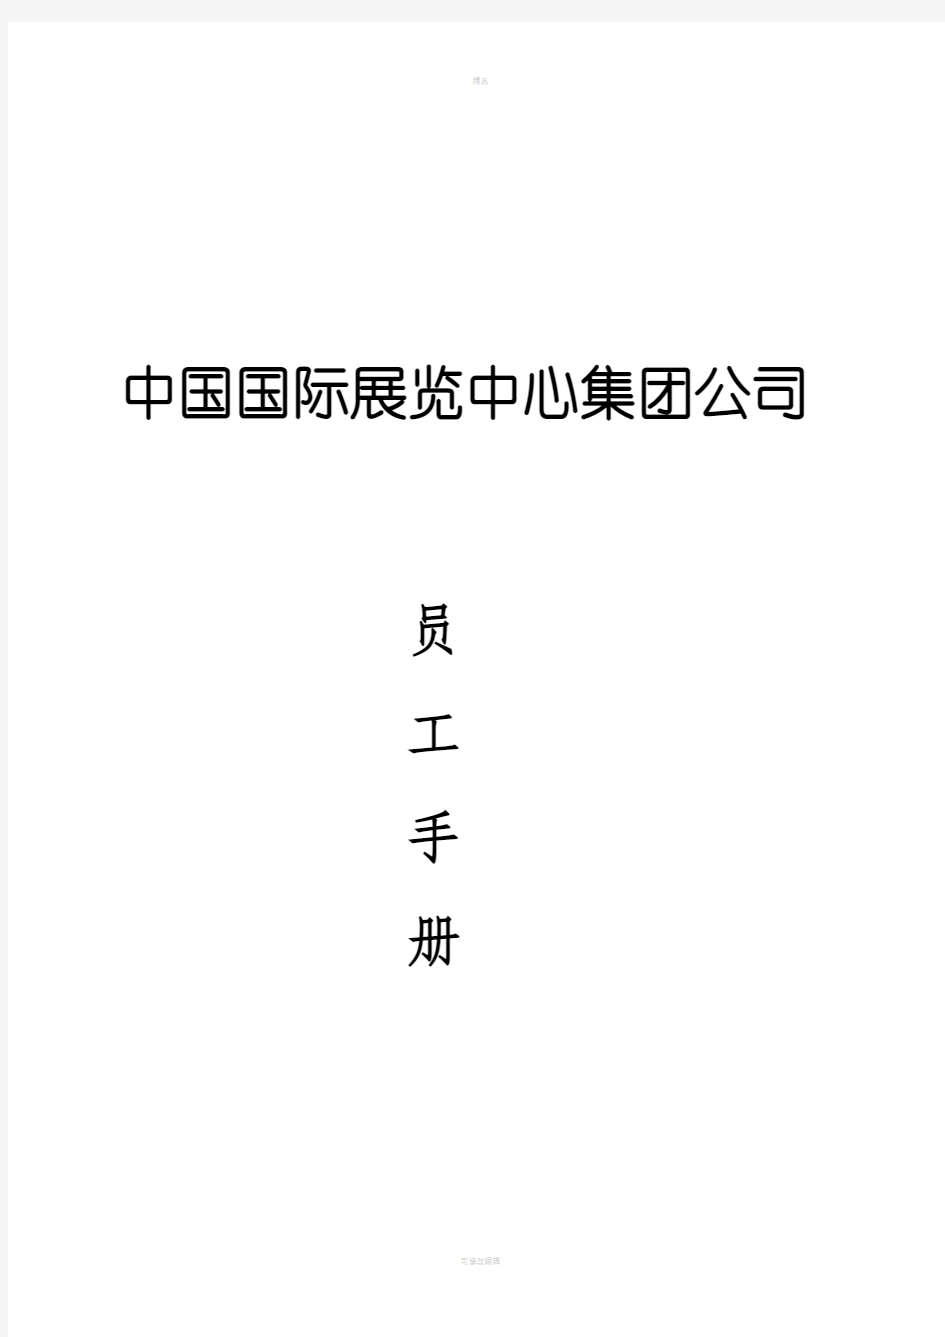 中国国际展览中心集团公司员工手册